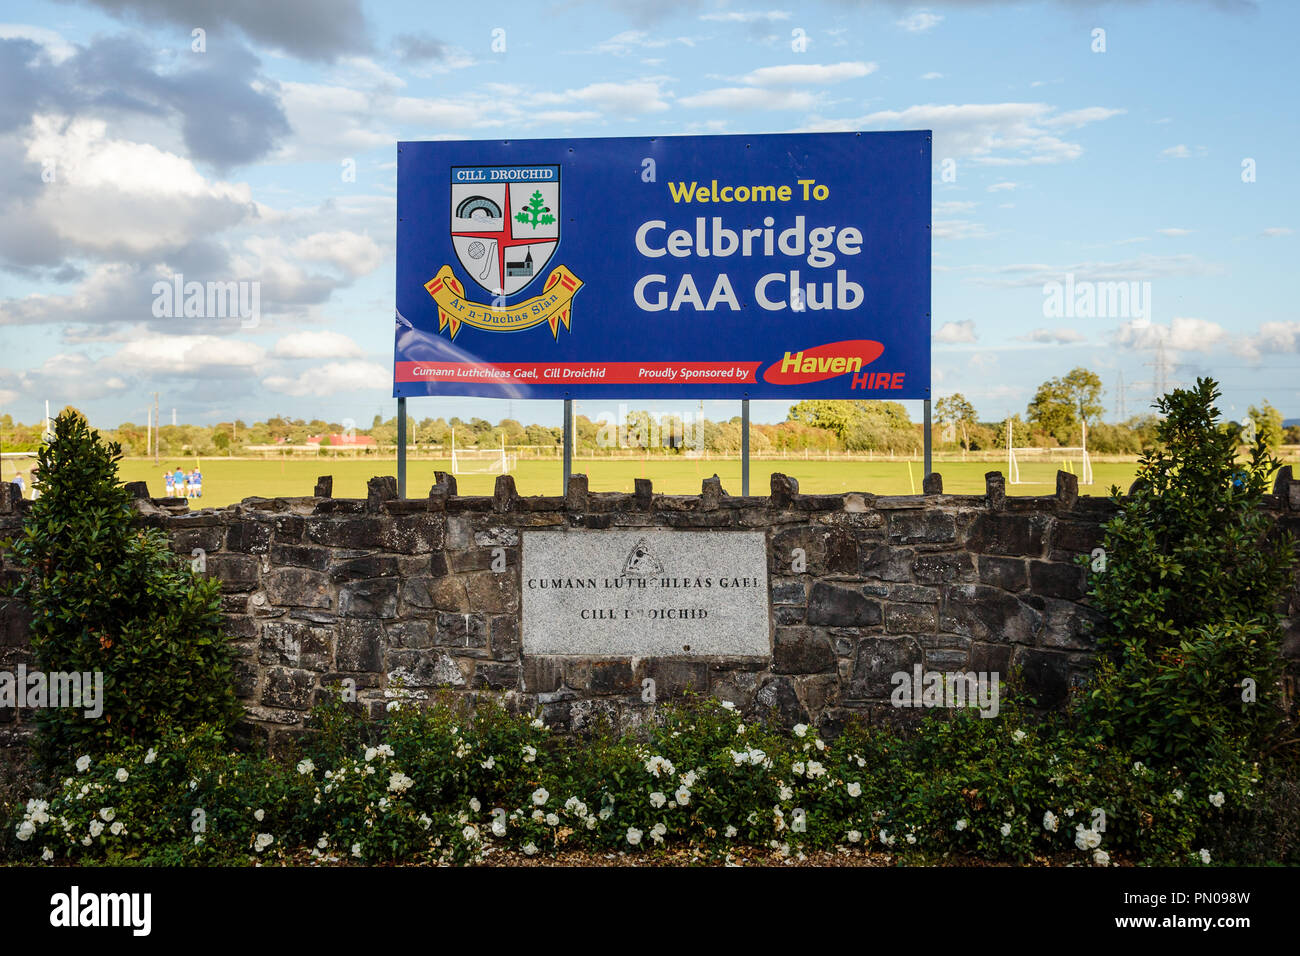 Celbridge GAA Club sign billboard presso il cancello di ingresso al club motivi. Foto Stock